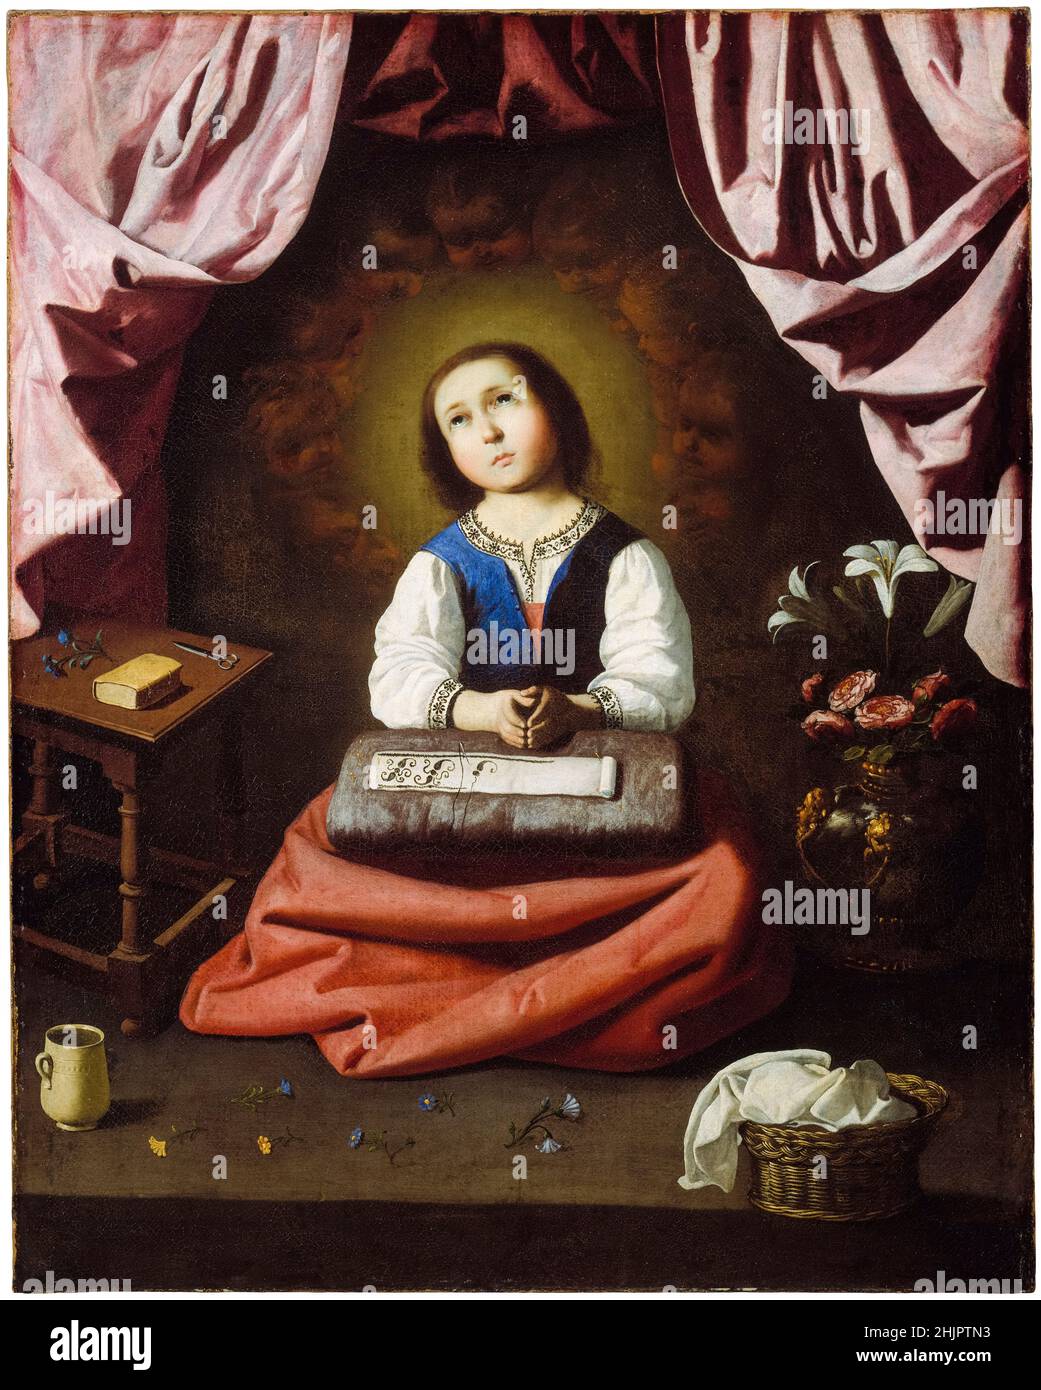 La jeune Vierge, peinture de Francisco de Zurbarán, 1632-1633 Banque D'Images